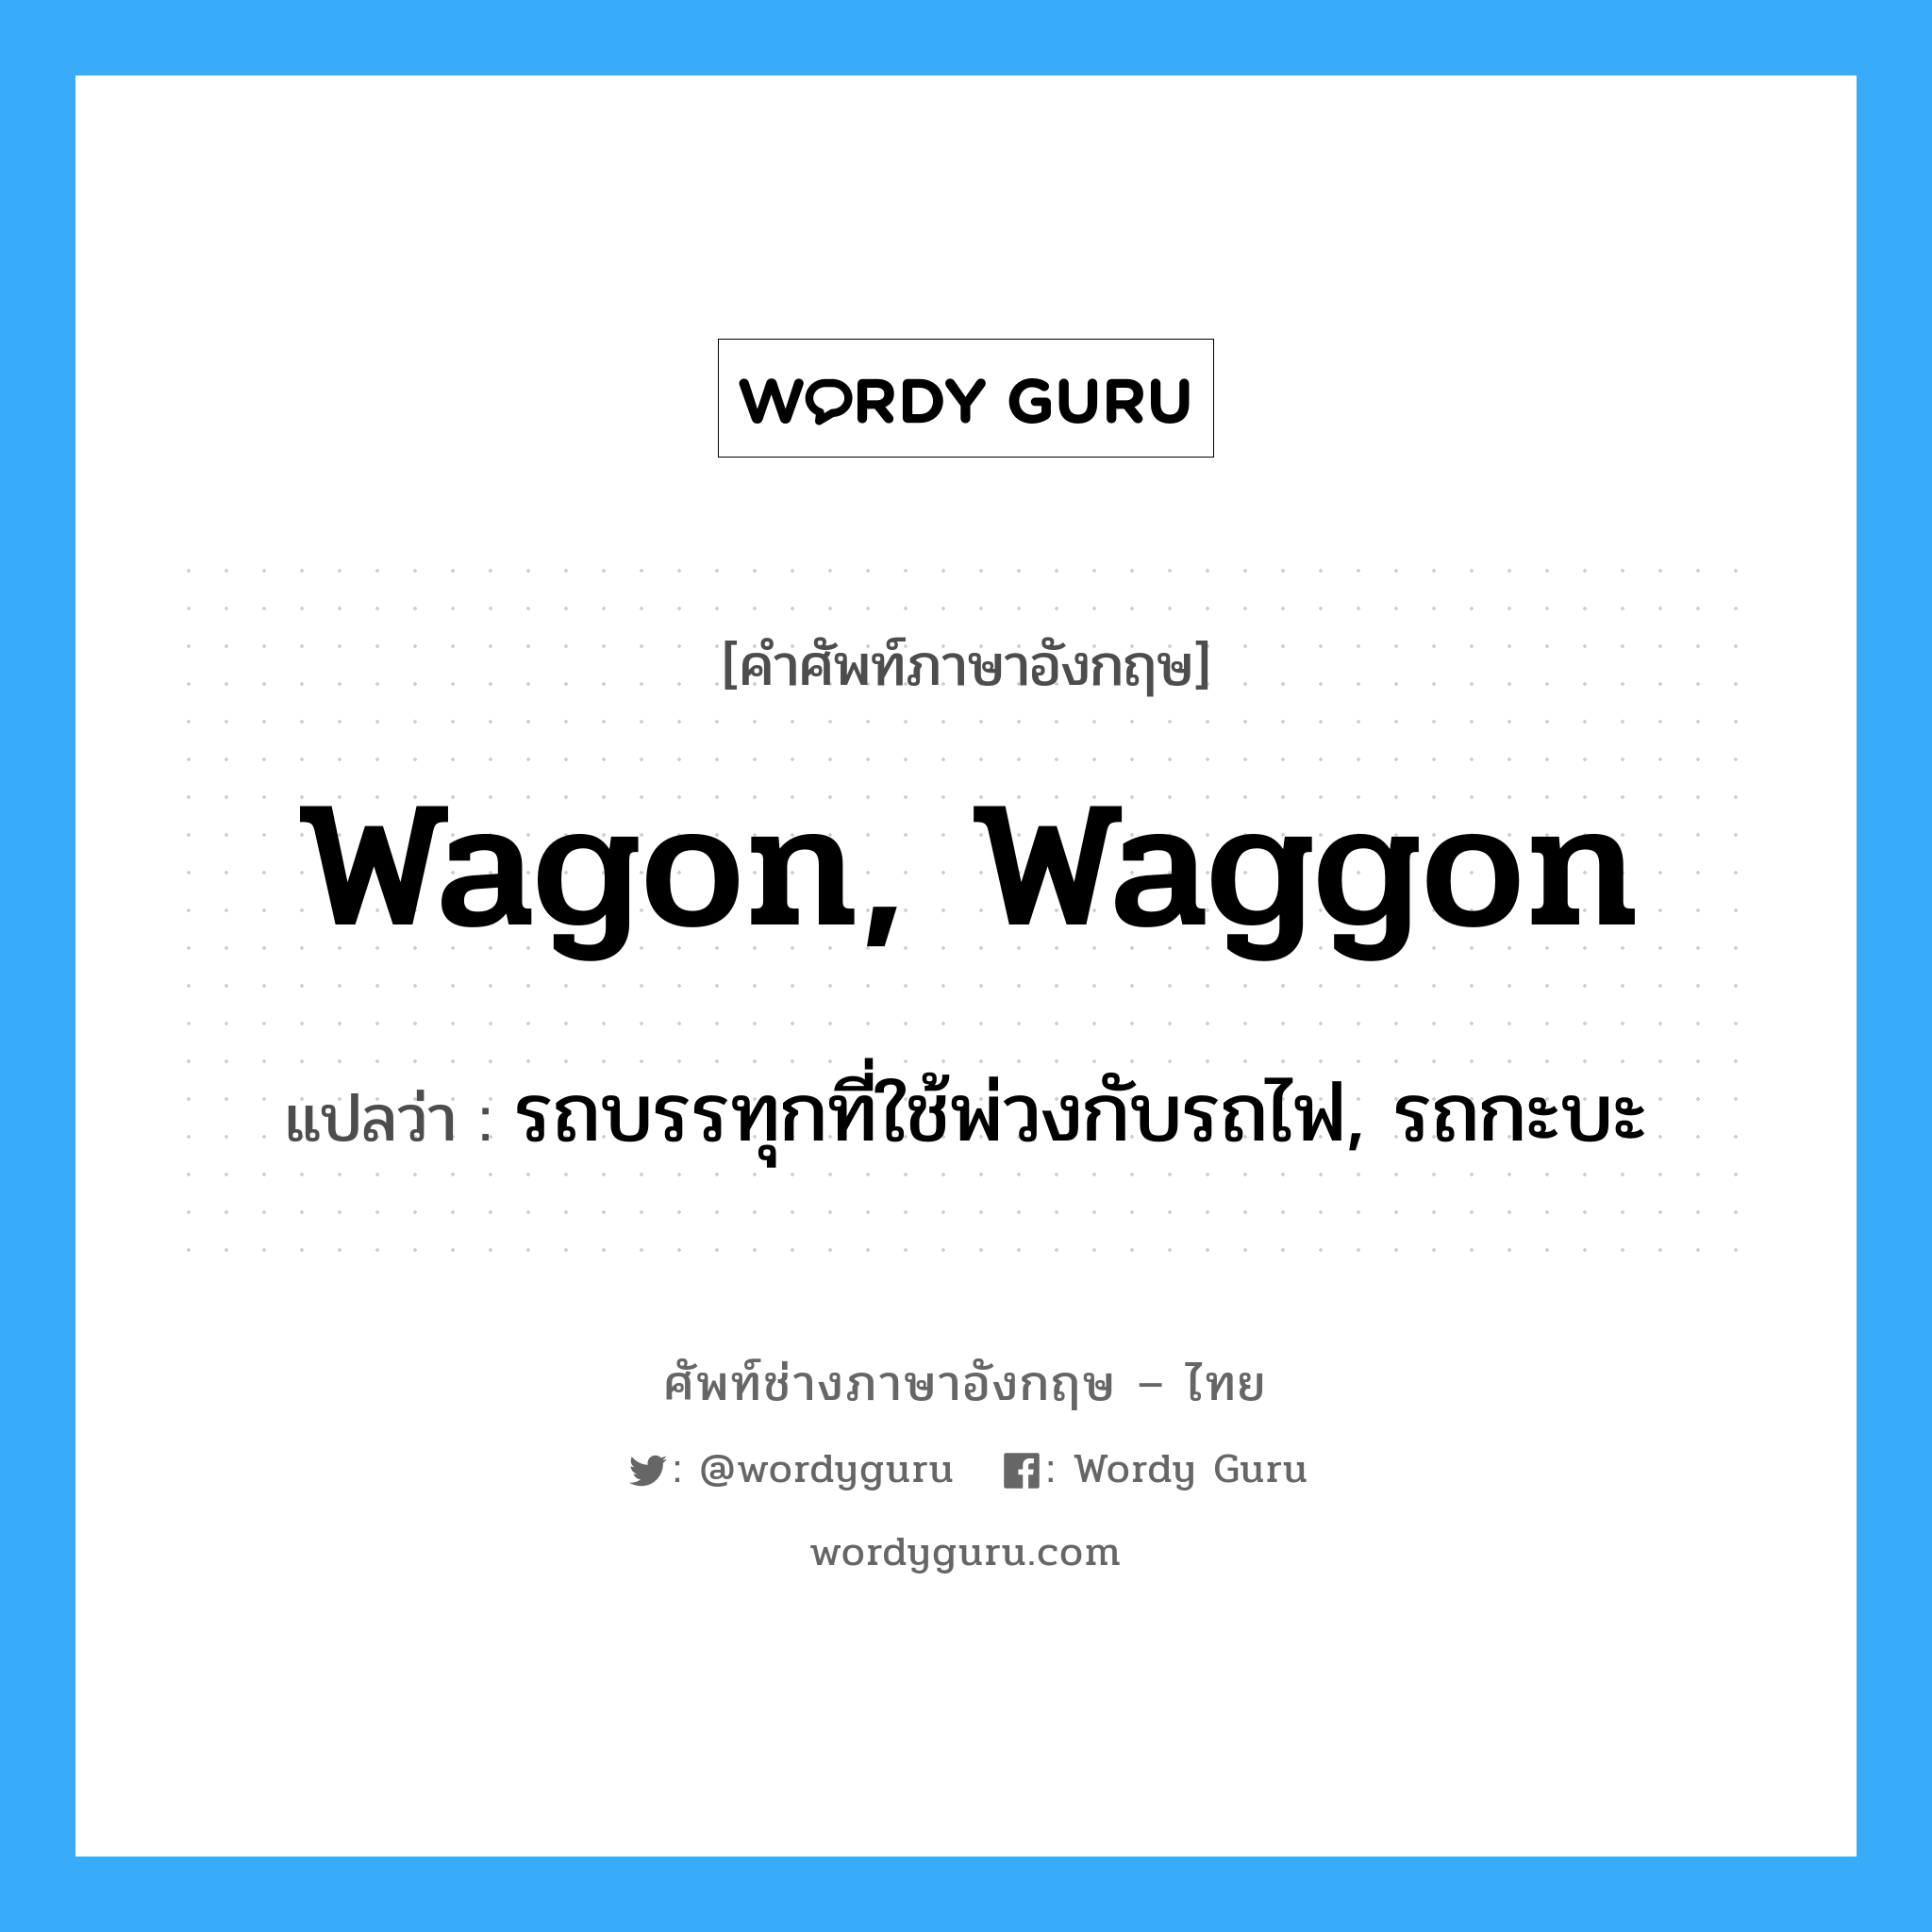 wagon, waggon แปลว่า?, คำศัพท์ช่างภาษาอังกฤษ - ไทย wagon, waggon คำศัพท์ภาษาอังกฤษ wagon, waggon แปลว่า รถบรรทุกที่ใช้พ่วงกับรถไฟ, รถกะบะ